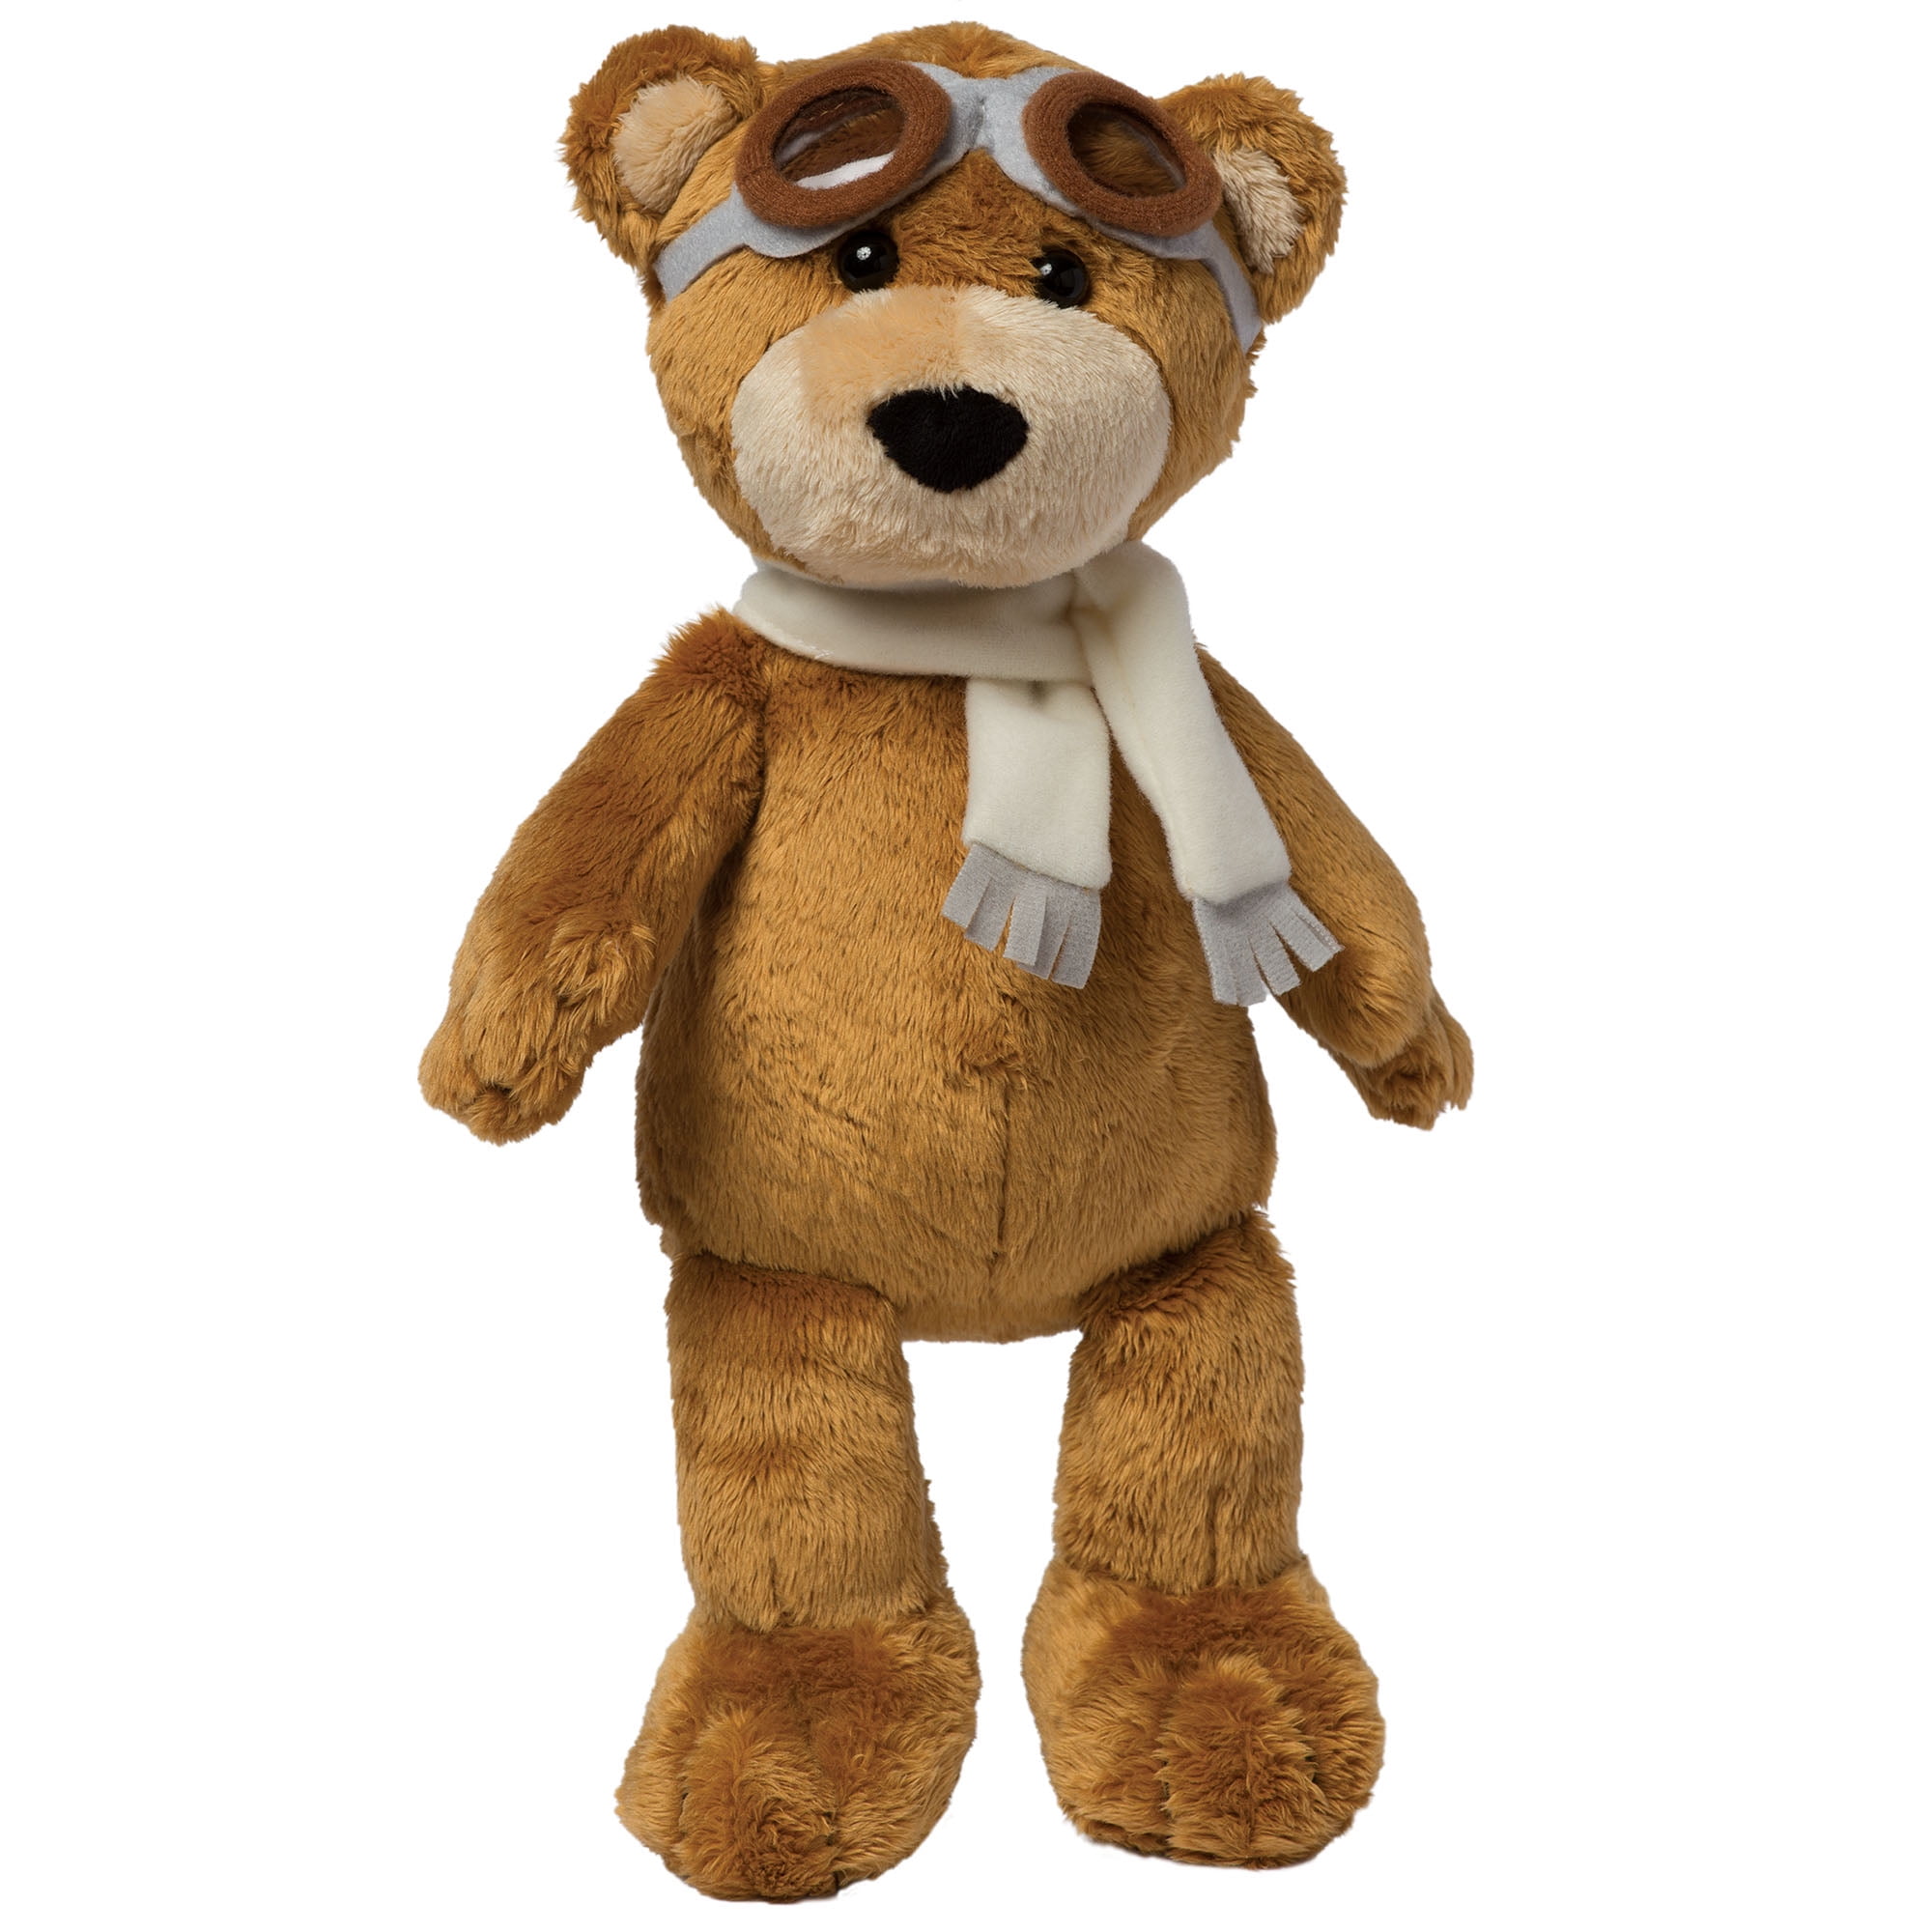 manhattan toy company teddy bear